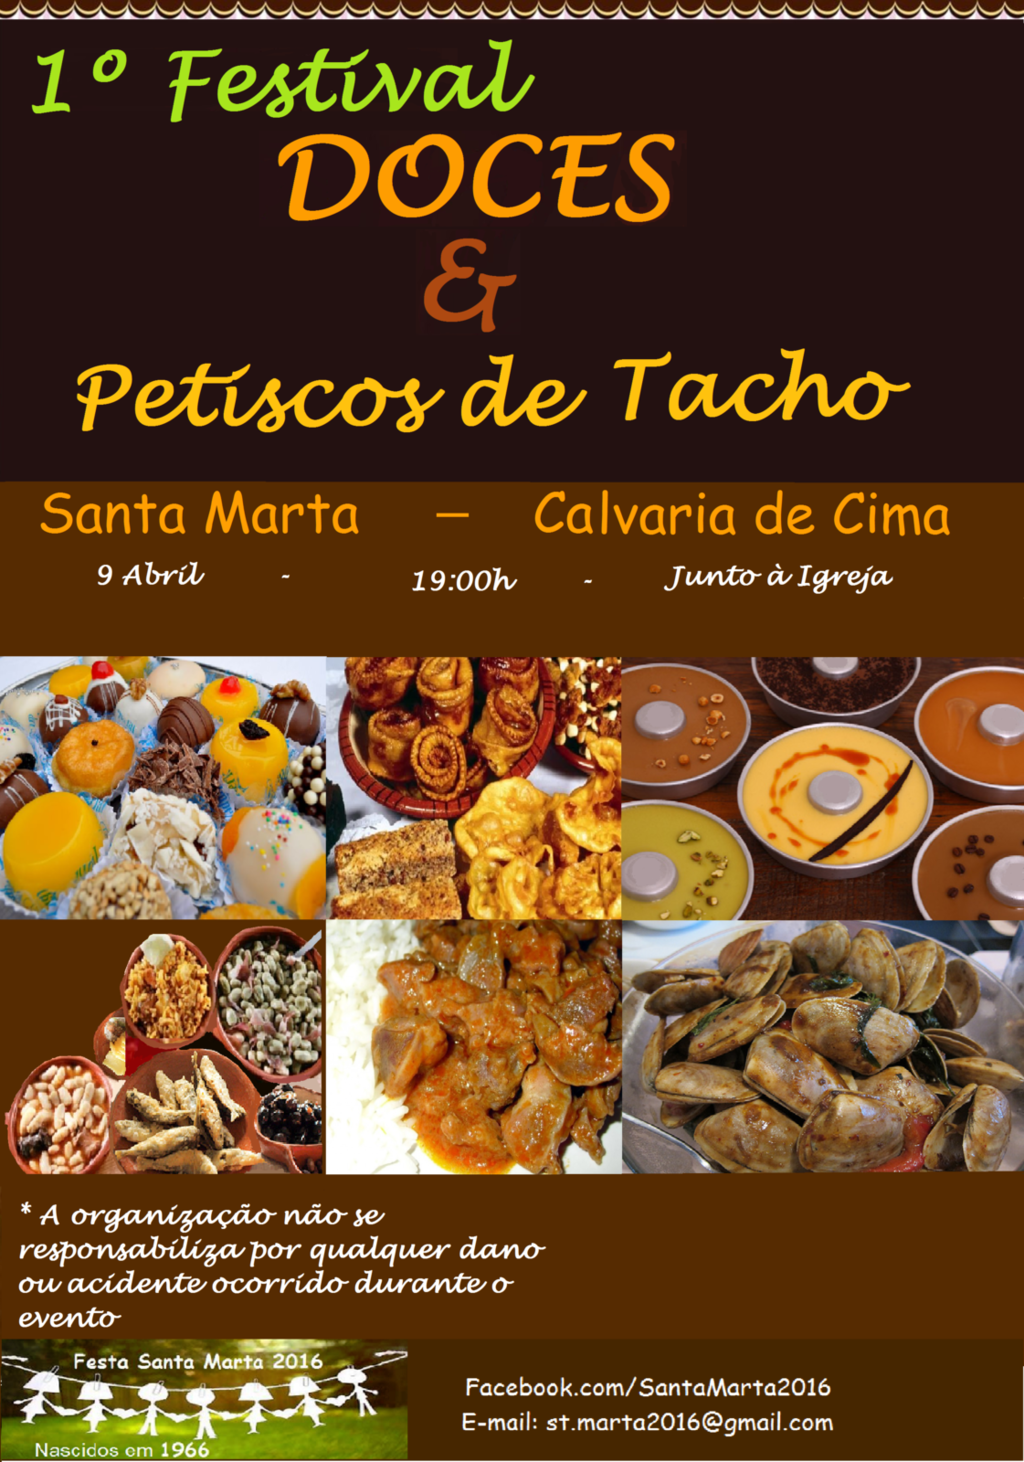 1º Festival de Doces e Petiscos no Tacho